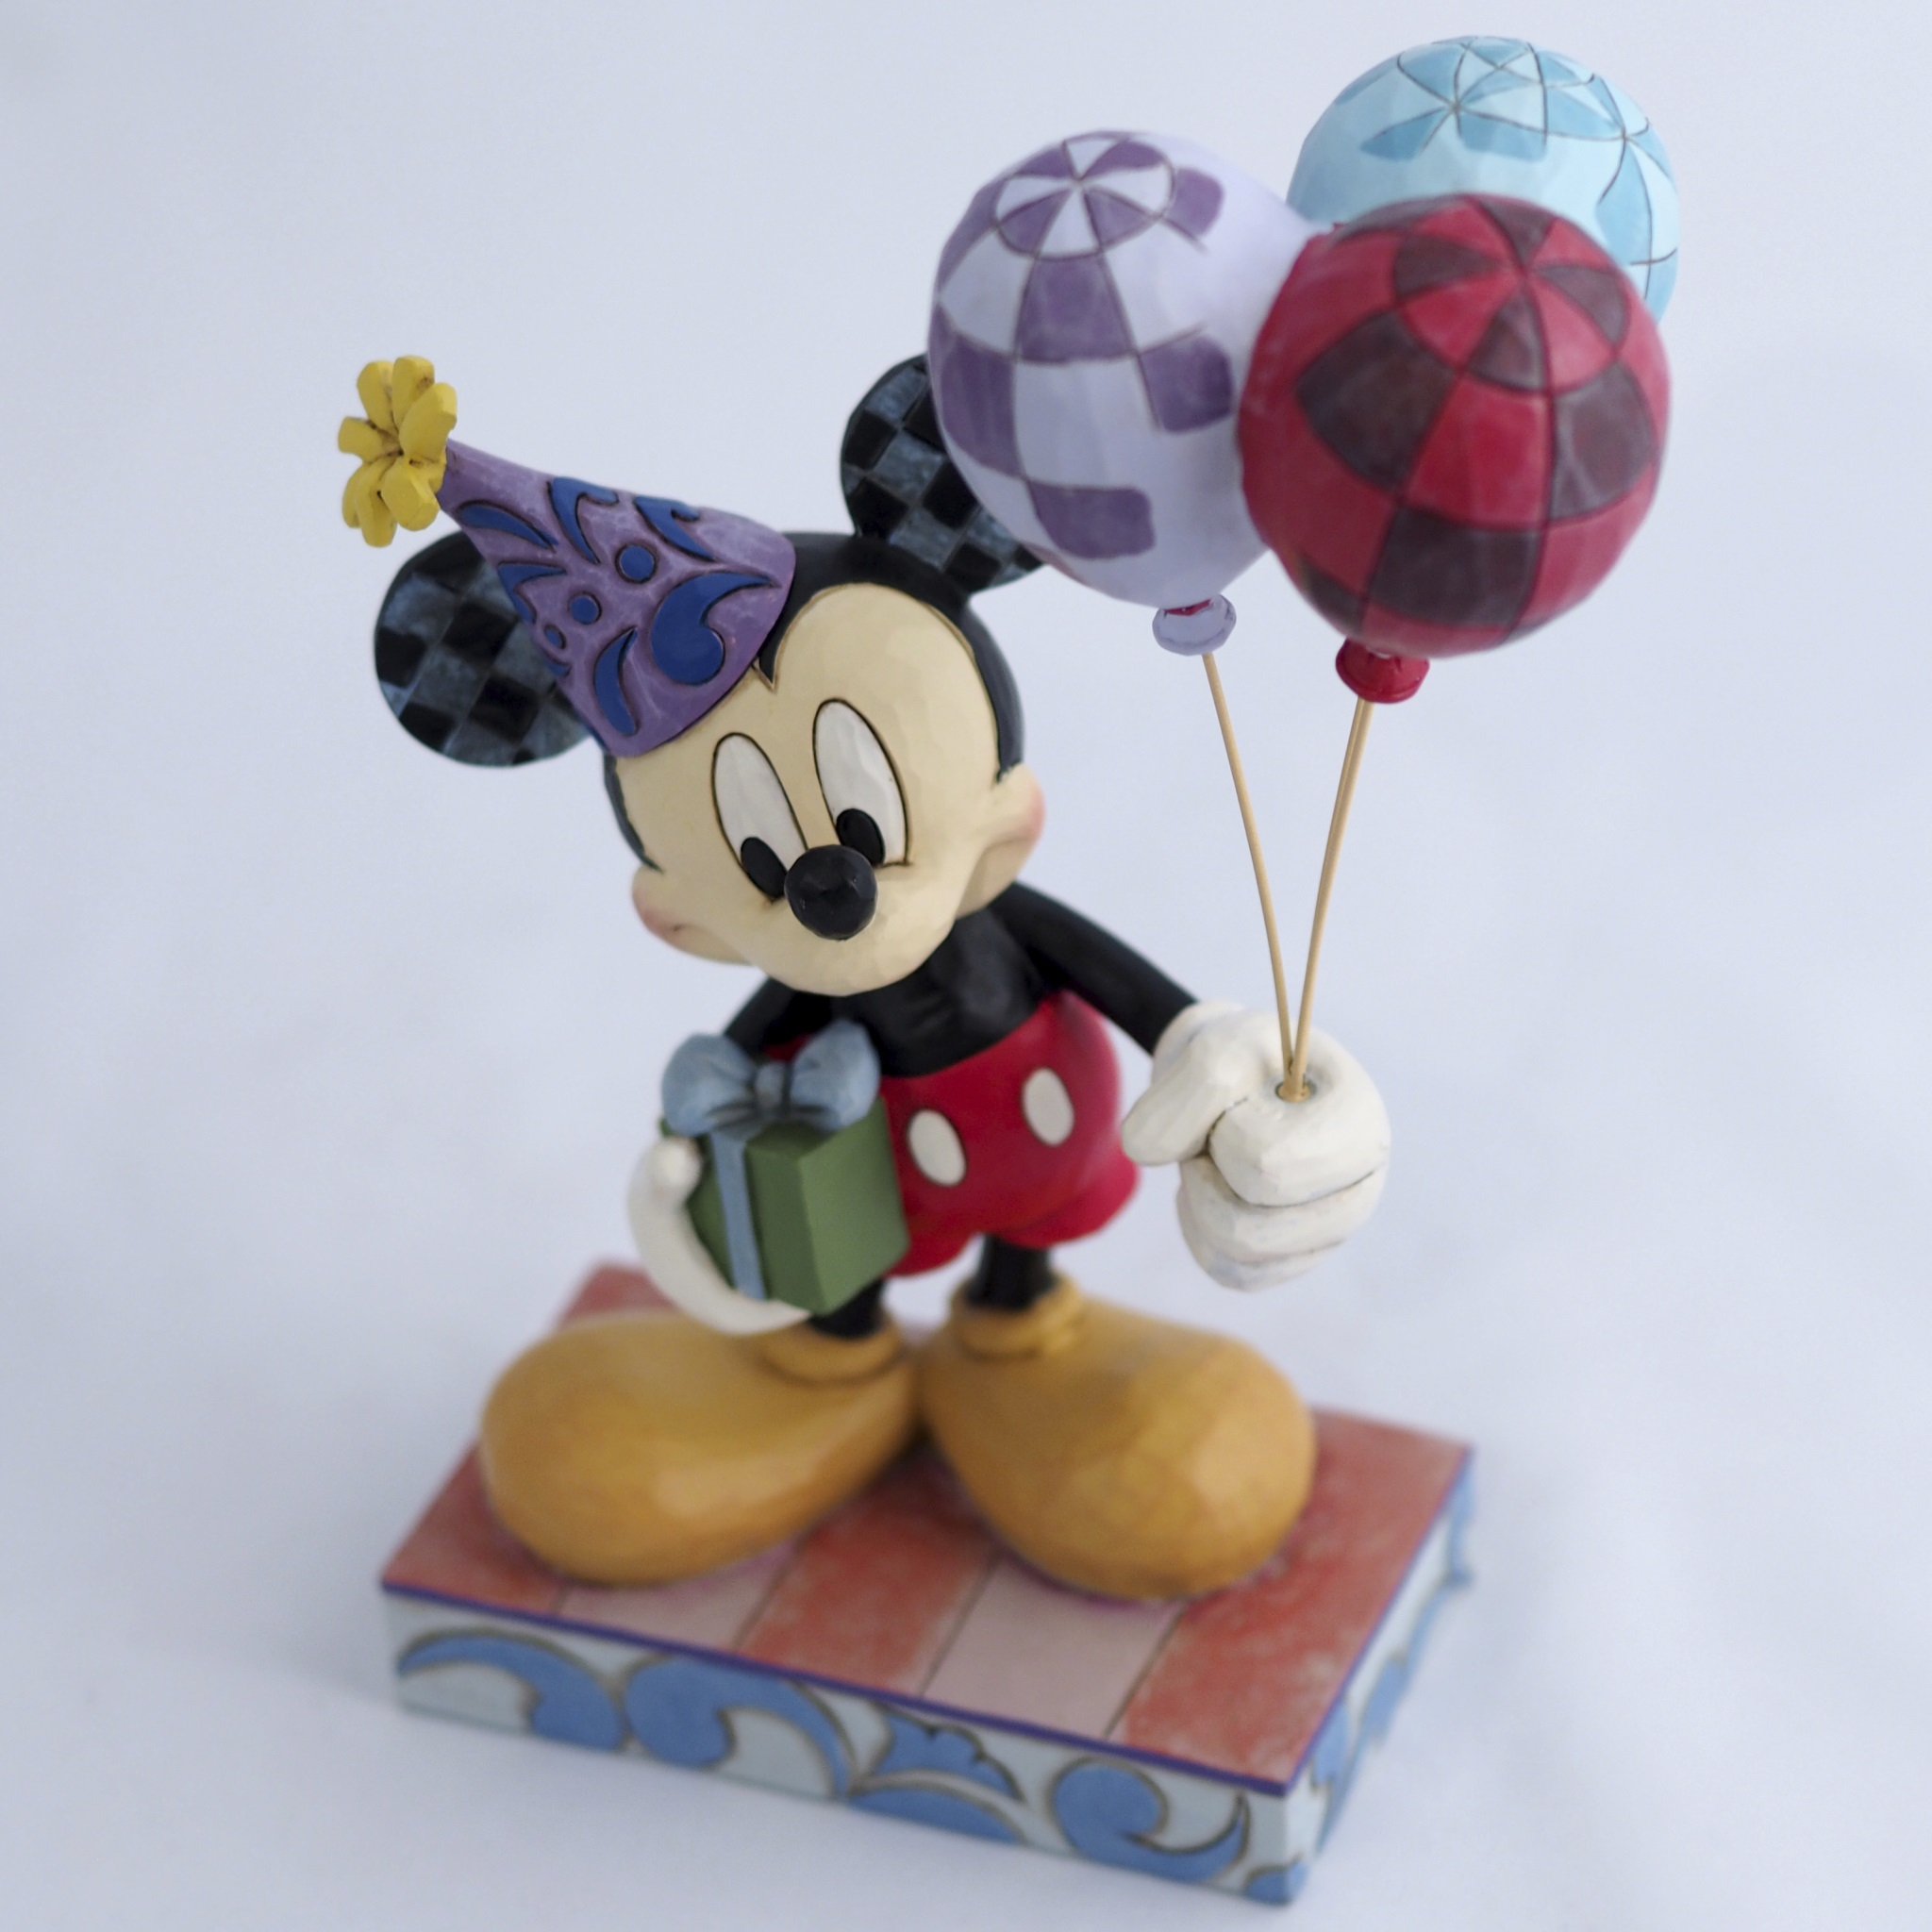 ディズニー　ミッキー　フィギュア
Disney　Mickey